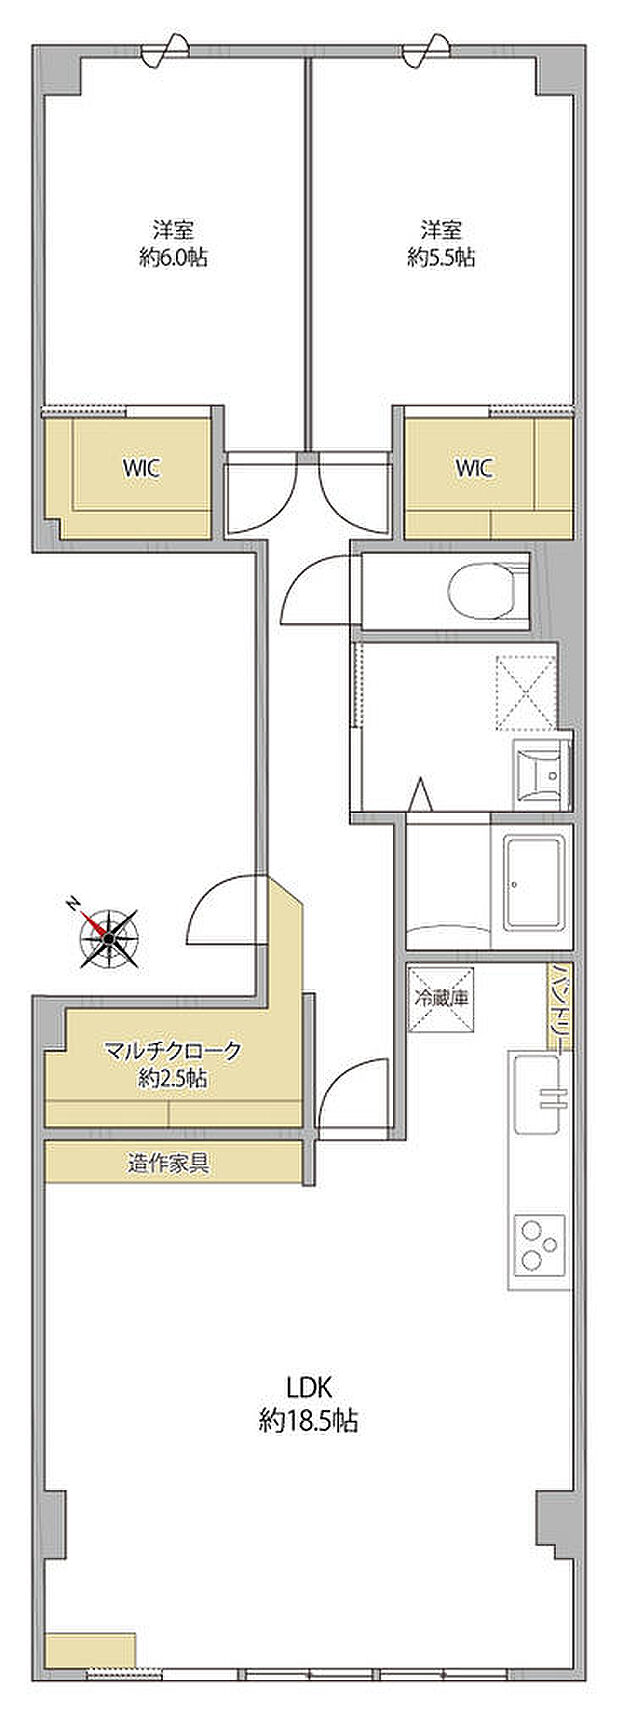 日生住宅目黒マンション(2LDK) 2階の内観